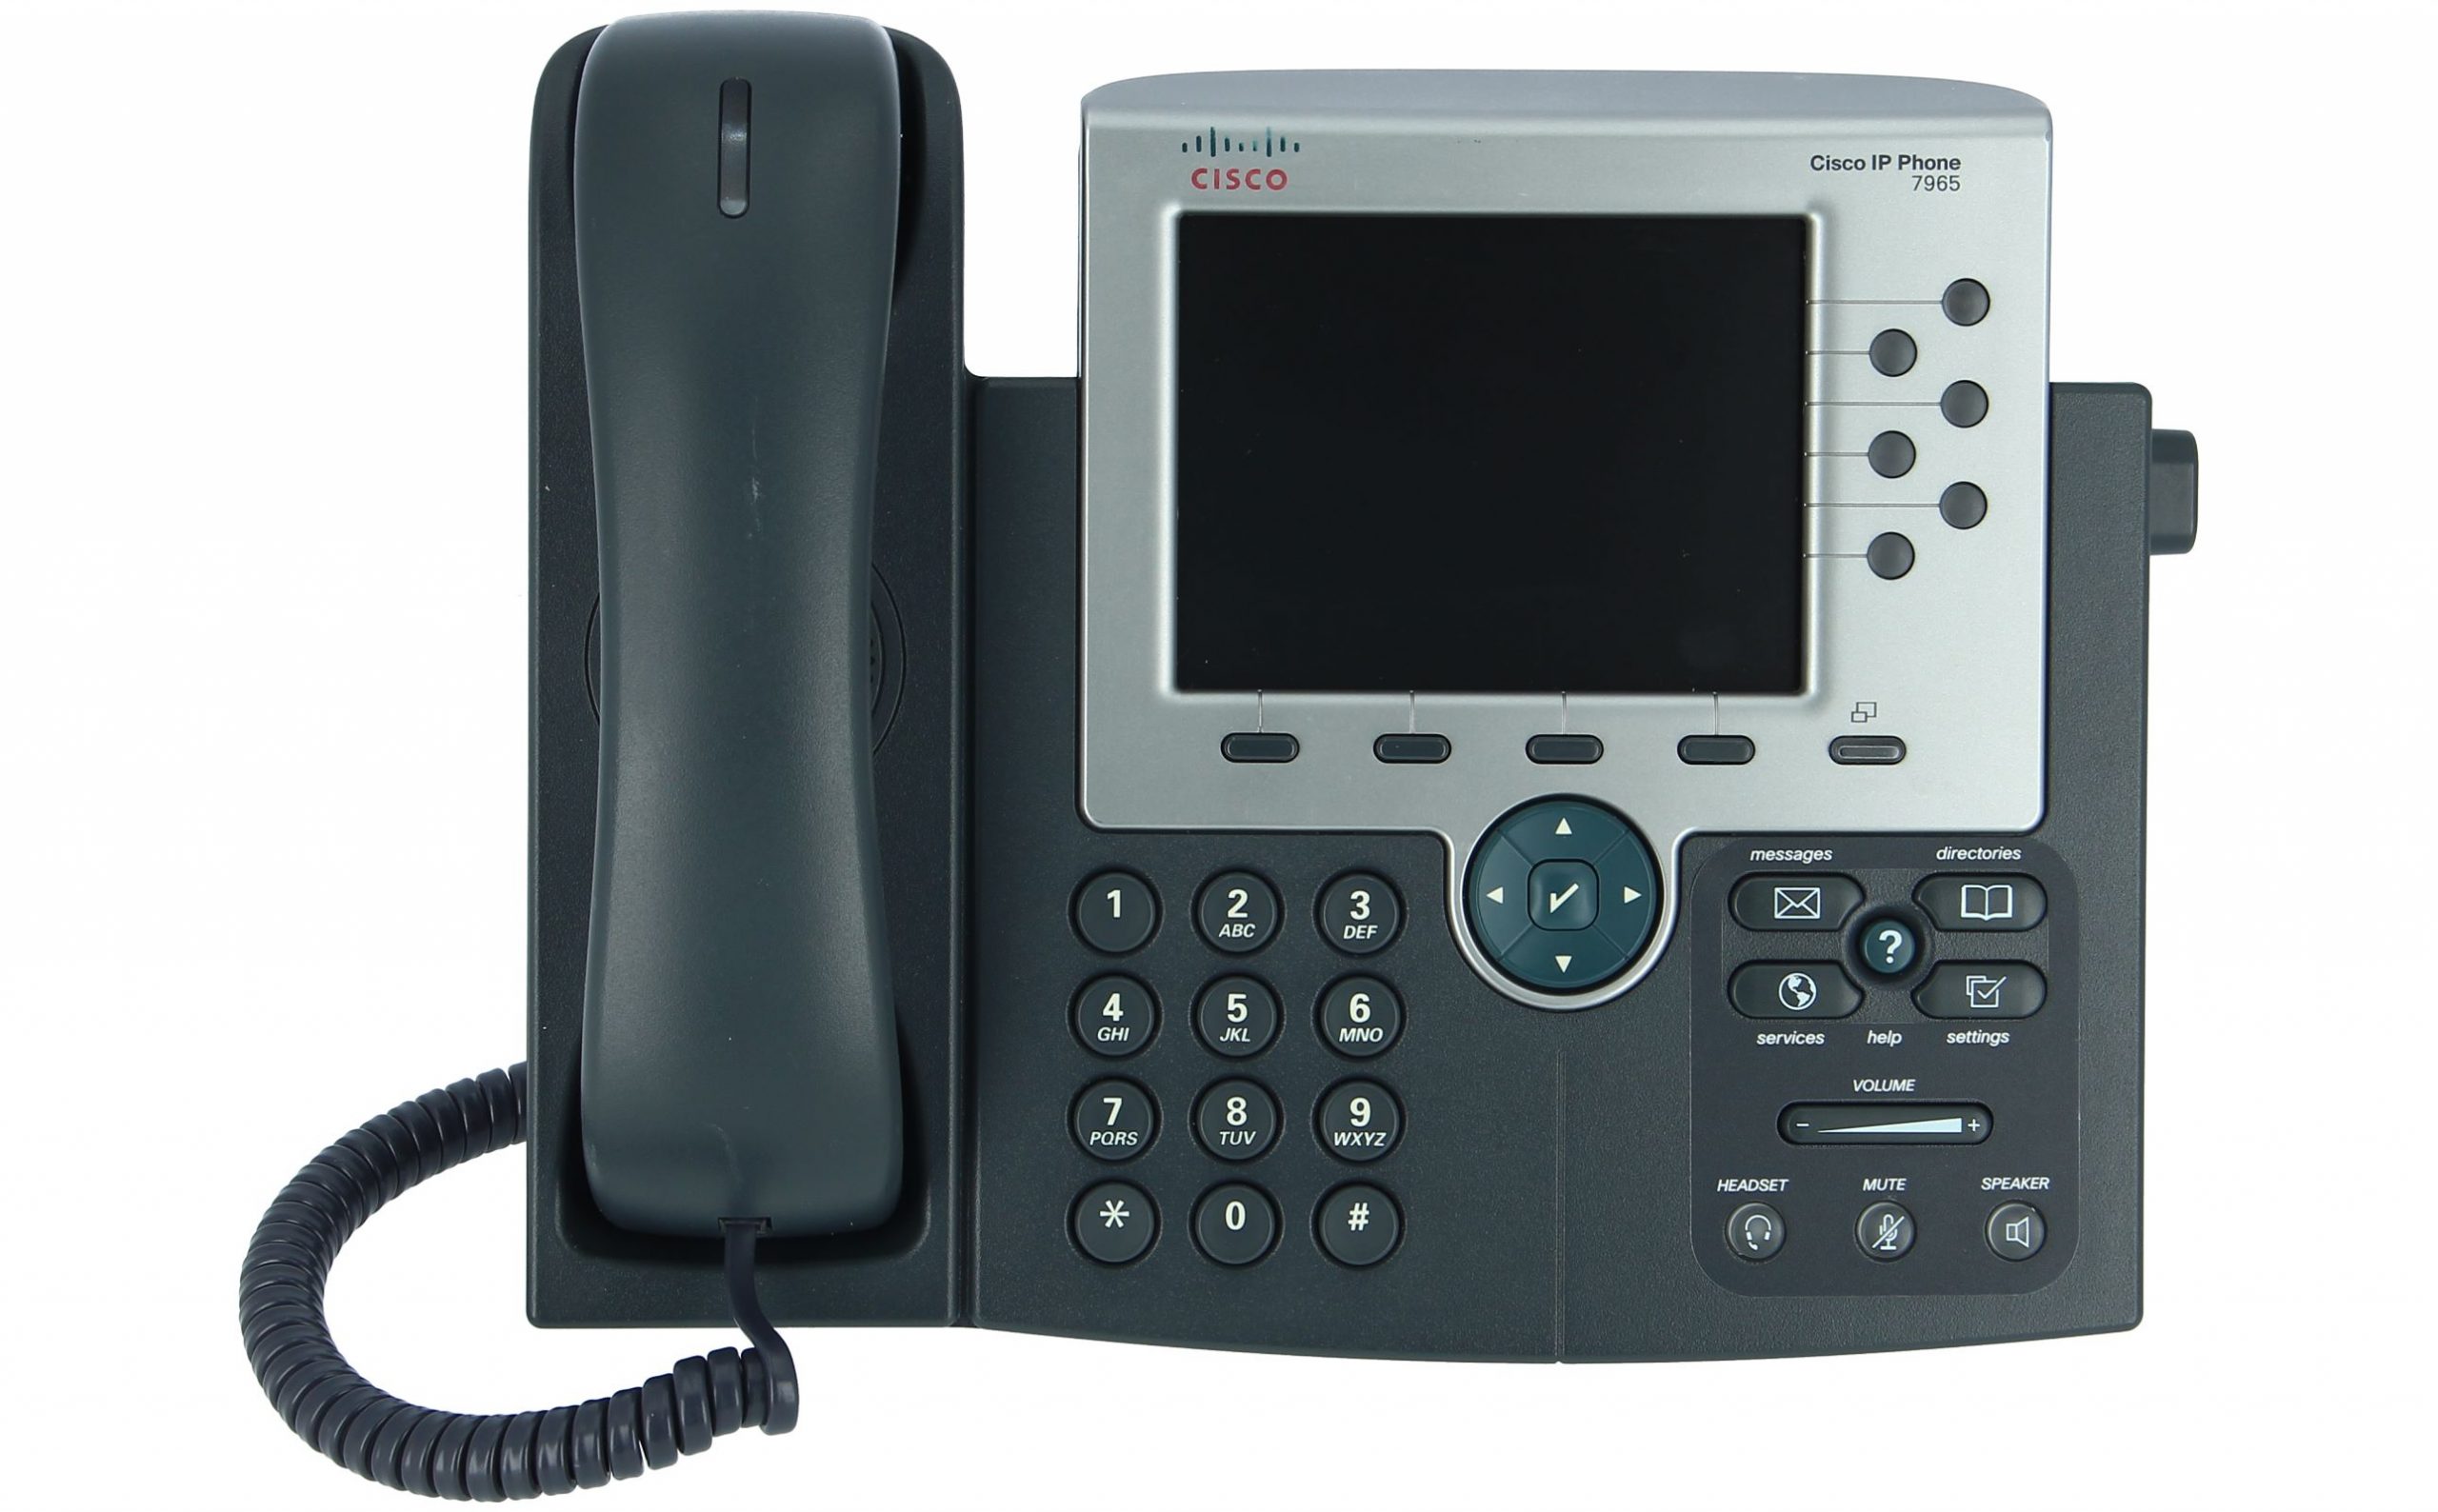 گوشی آی پی فون سیسکو CP-7965G - Unified IP Phone Cisco CP-7965G - شبکه کالا